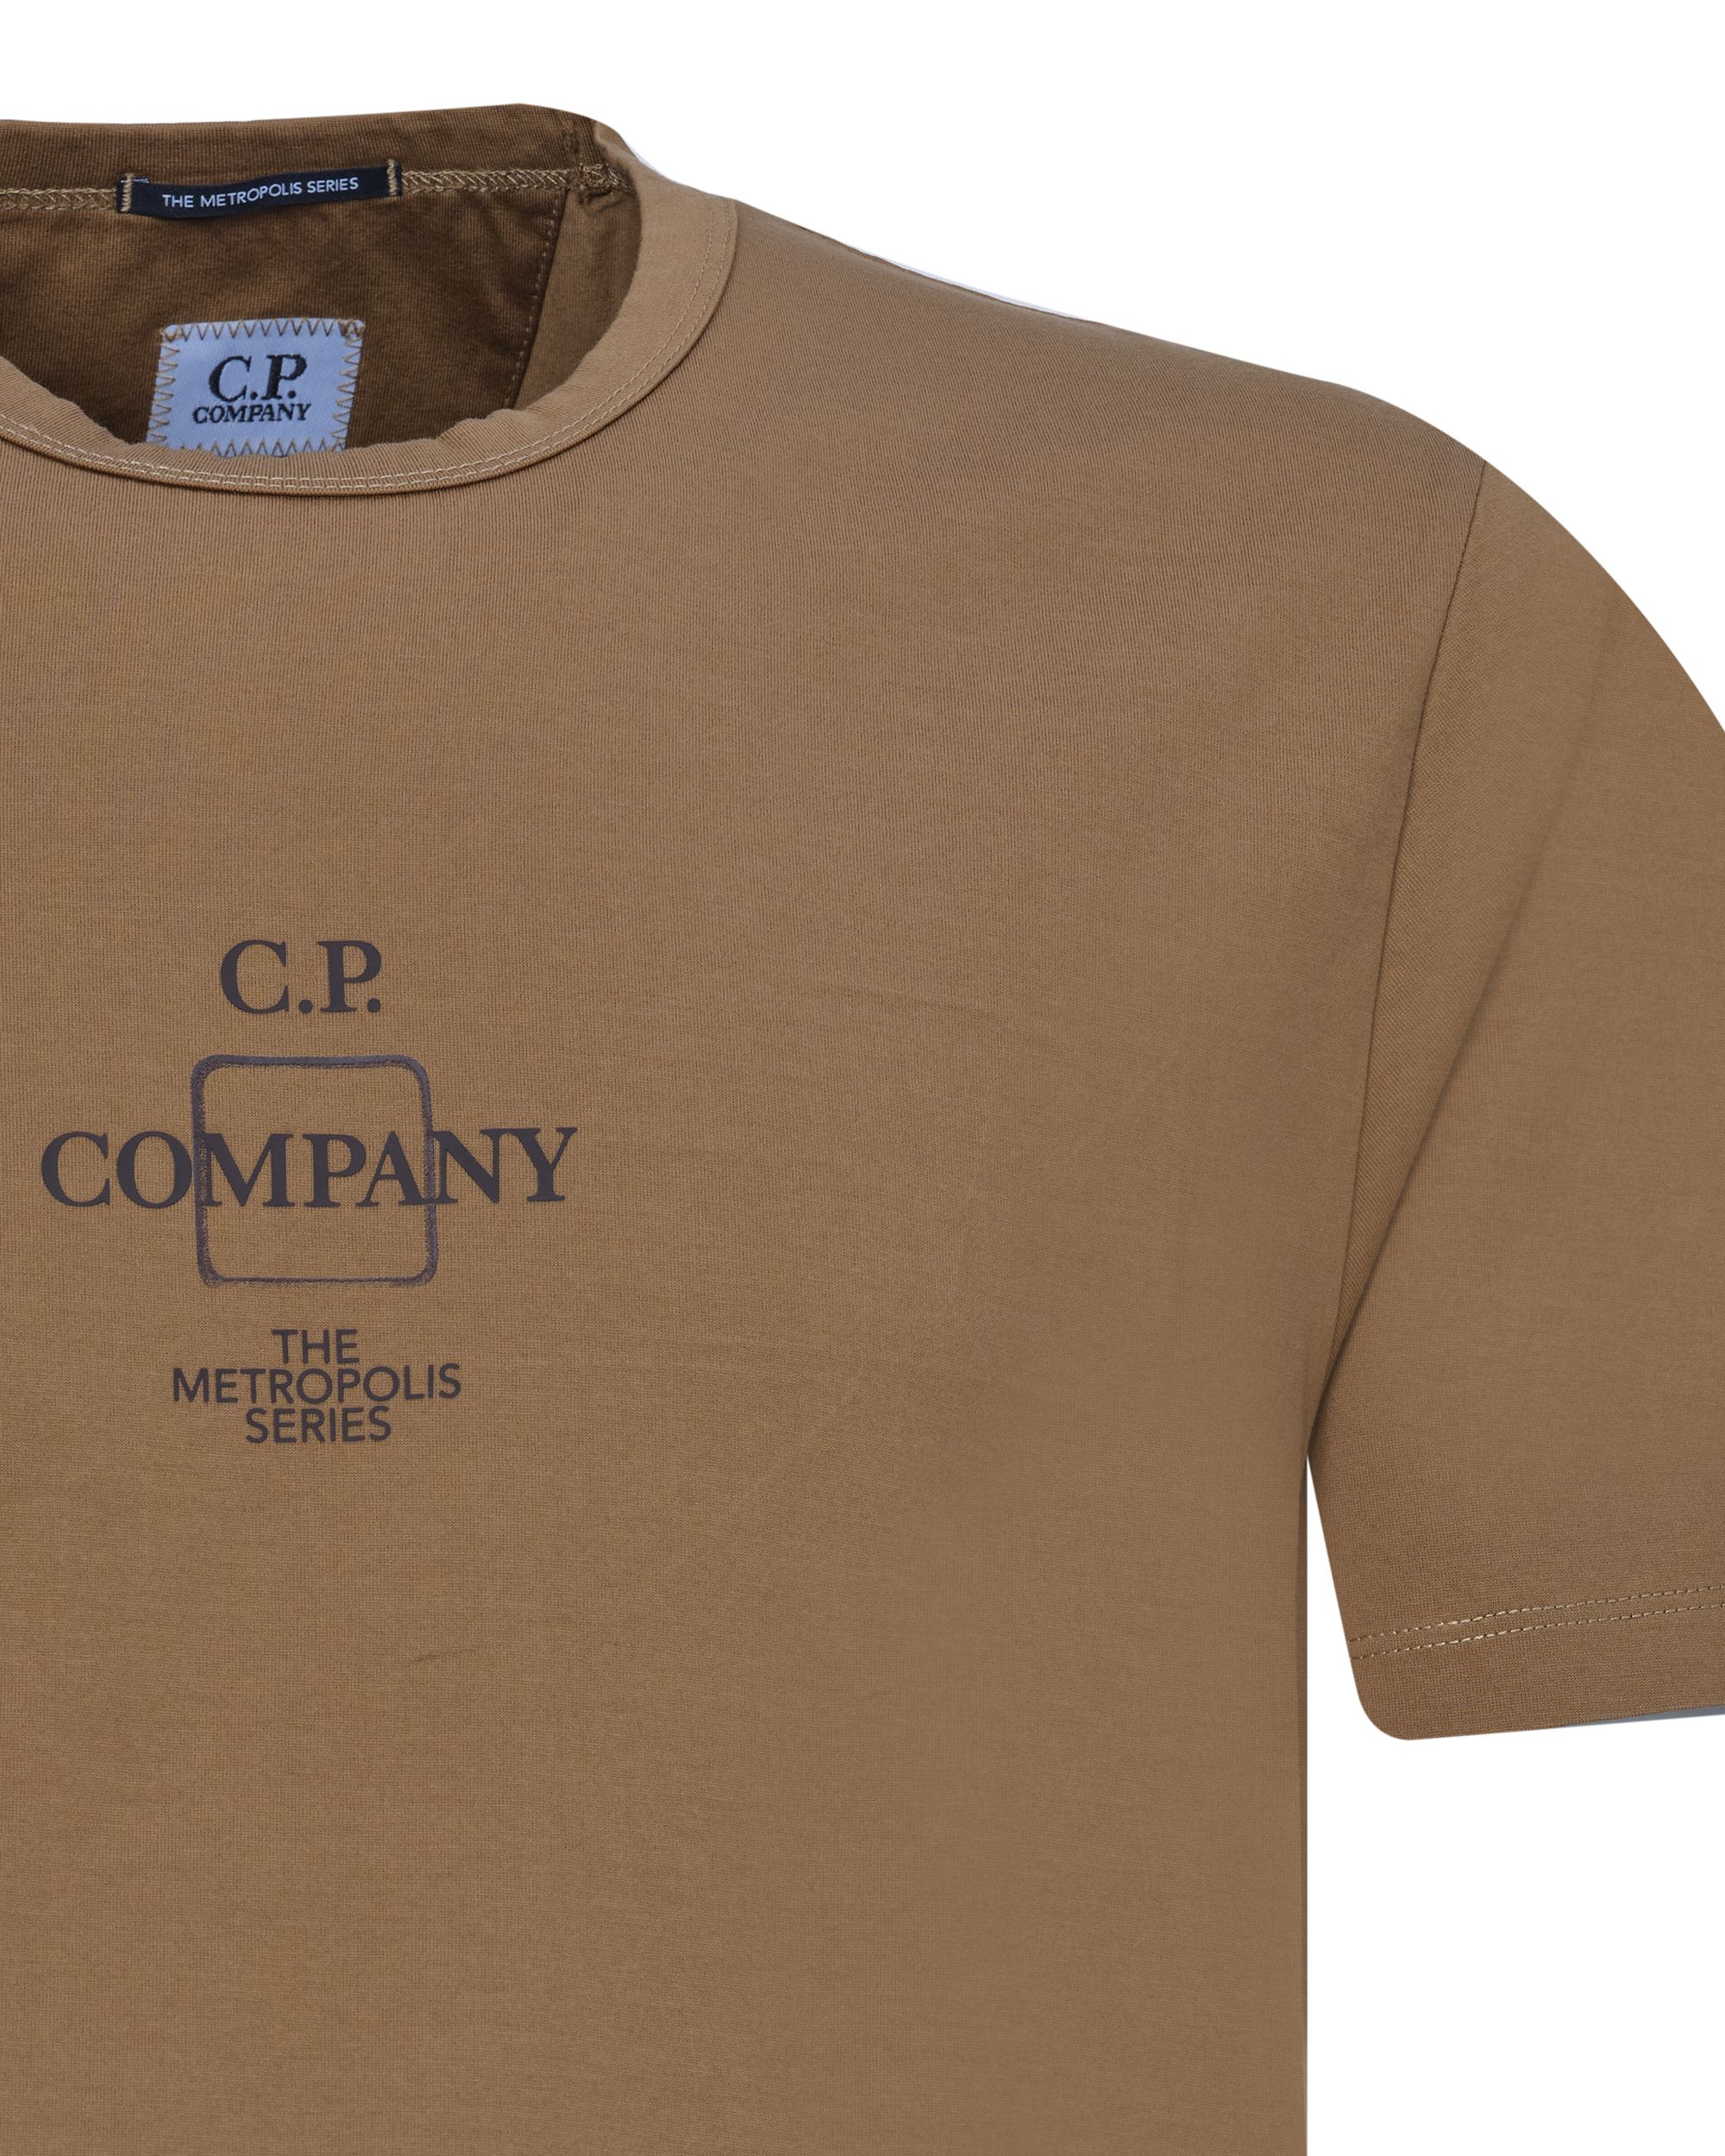 C.P Company T-shirt KM Khaki 078937-002-L